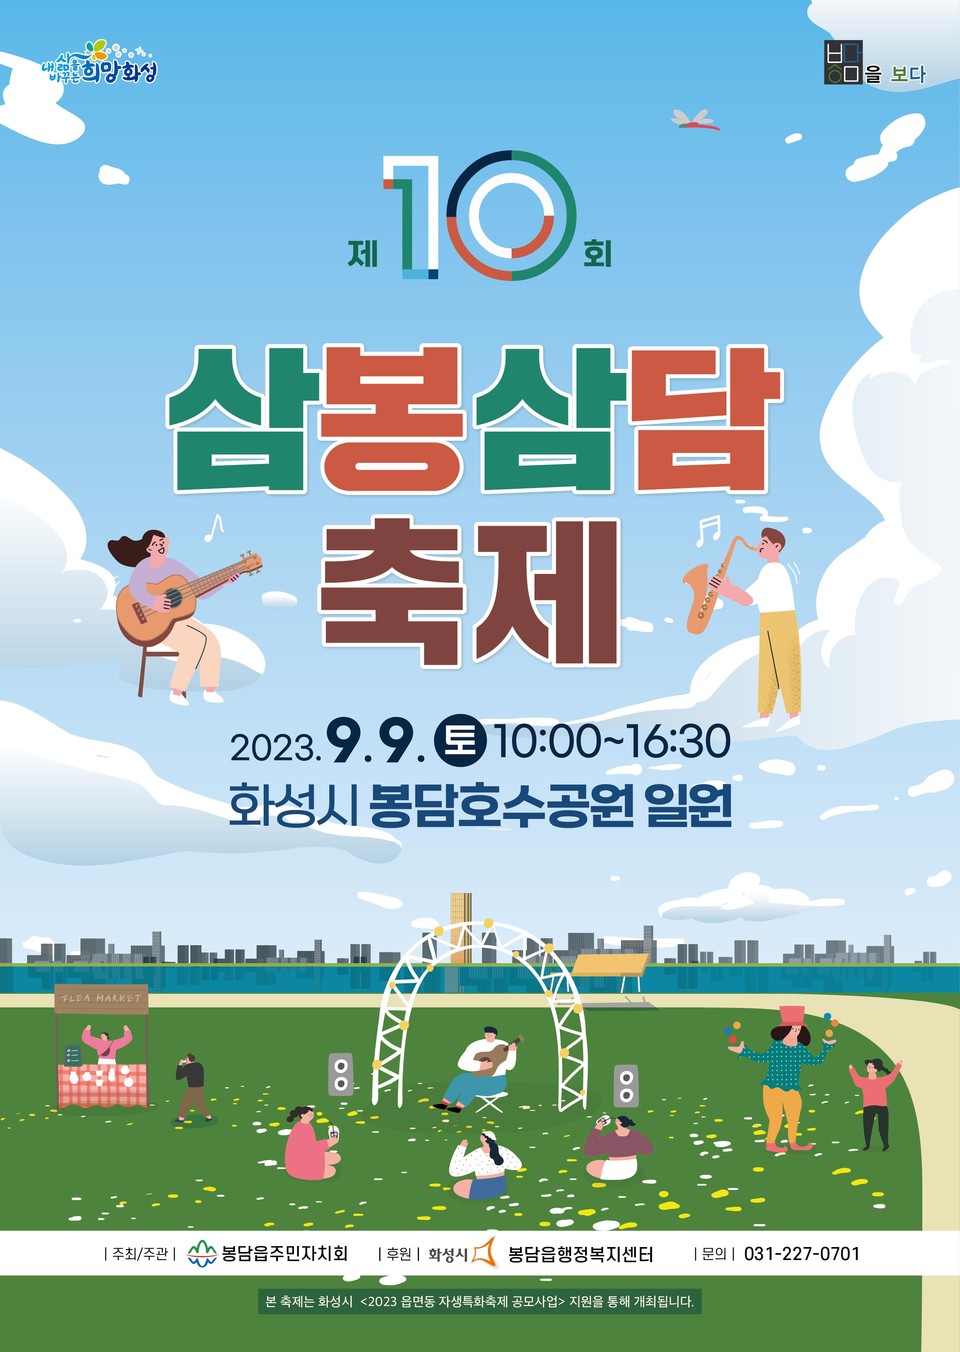 ▲ 화성시, 봉담읍 자생특화축제 '제10회 삼봉삼담축제' 9월 9일 개최